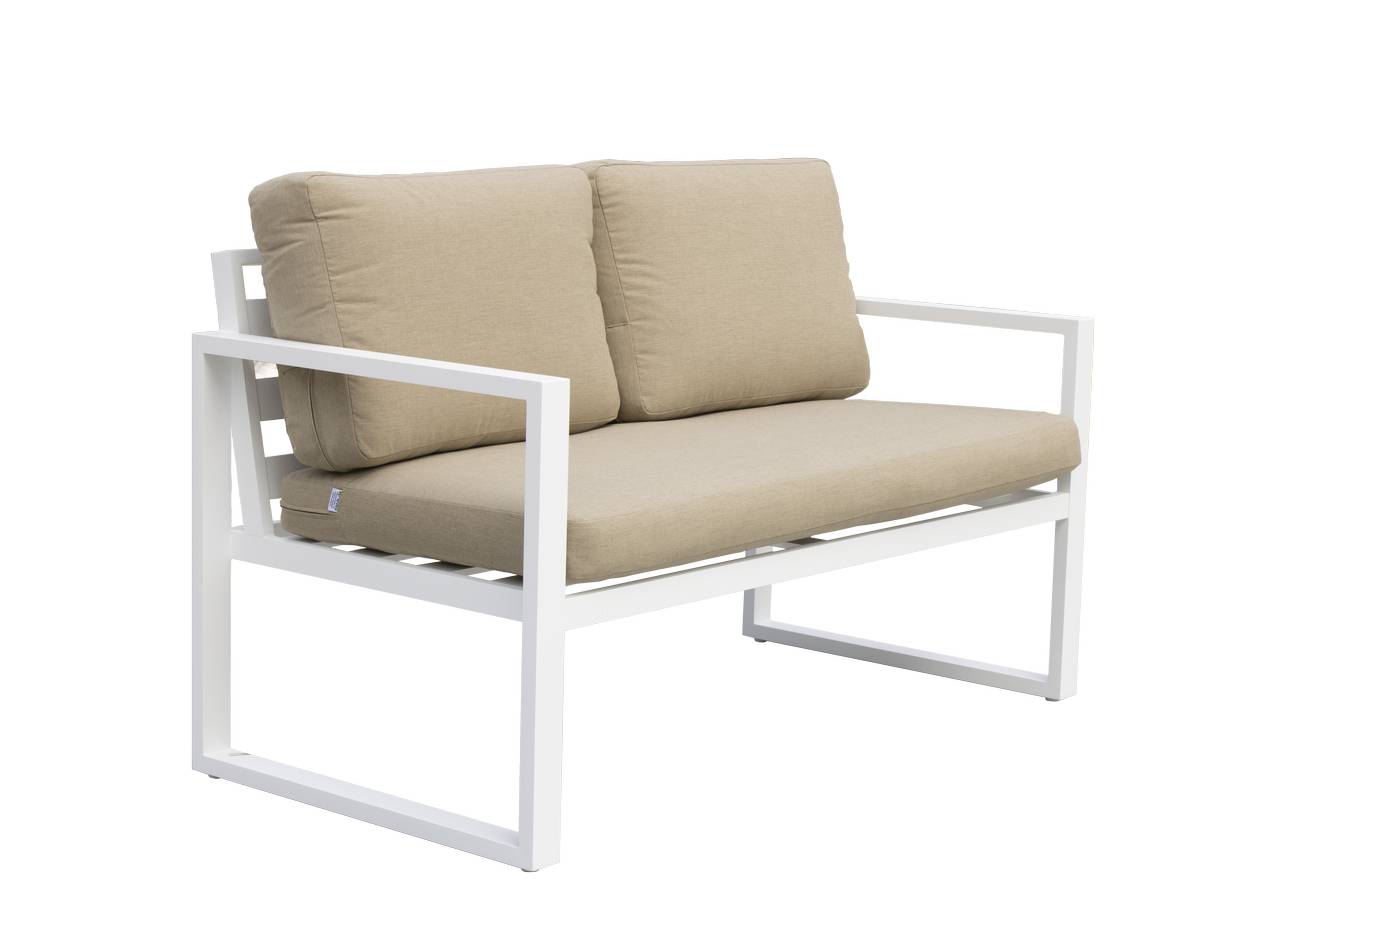 Sofá 2p + 2 sillones + mesa de aluminio [Fenix] - Conjunto de aluminio para jardín: 1 sofá 2 plazas + 2 sillones + 1 mesa de centro. Disponible en cinco colores diferentes.